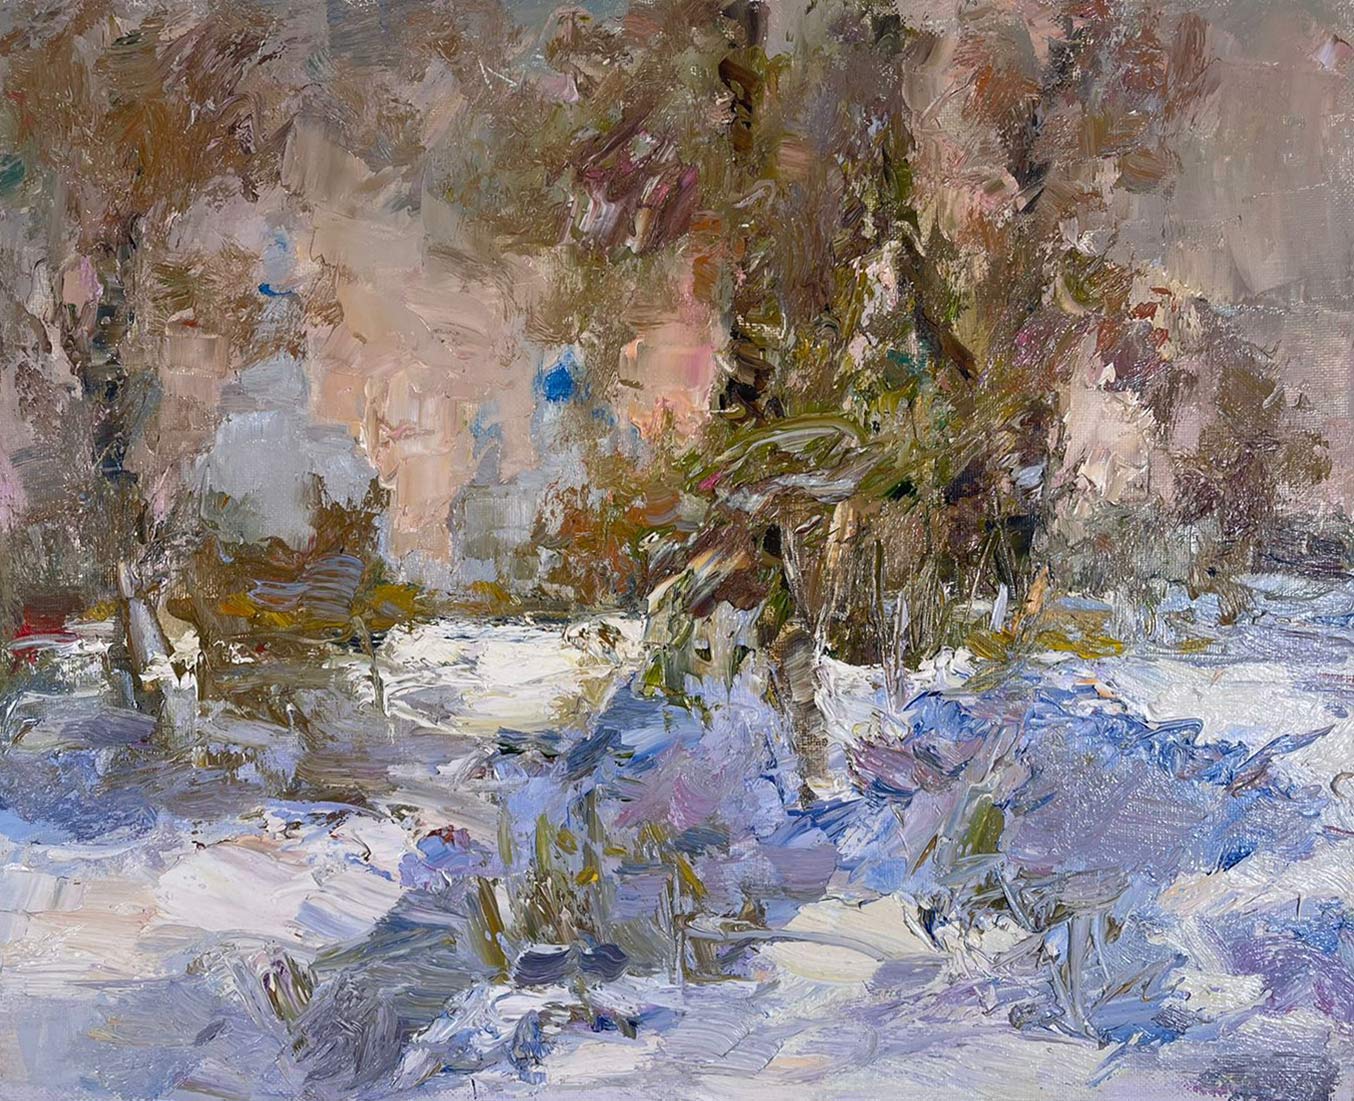 Untitled - 1, Tuman Zhumabaev, Buy the painting Oil